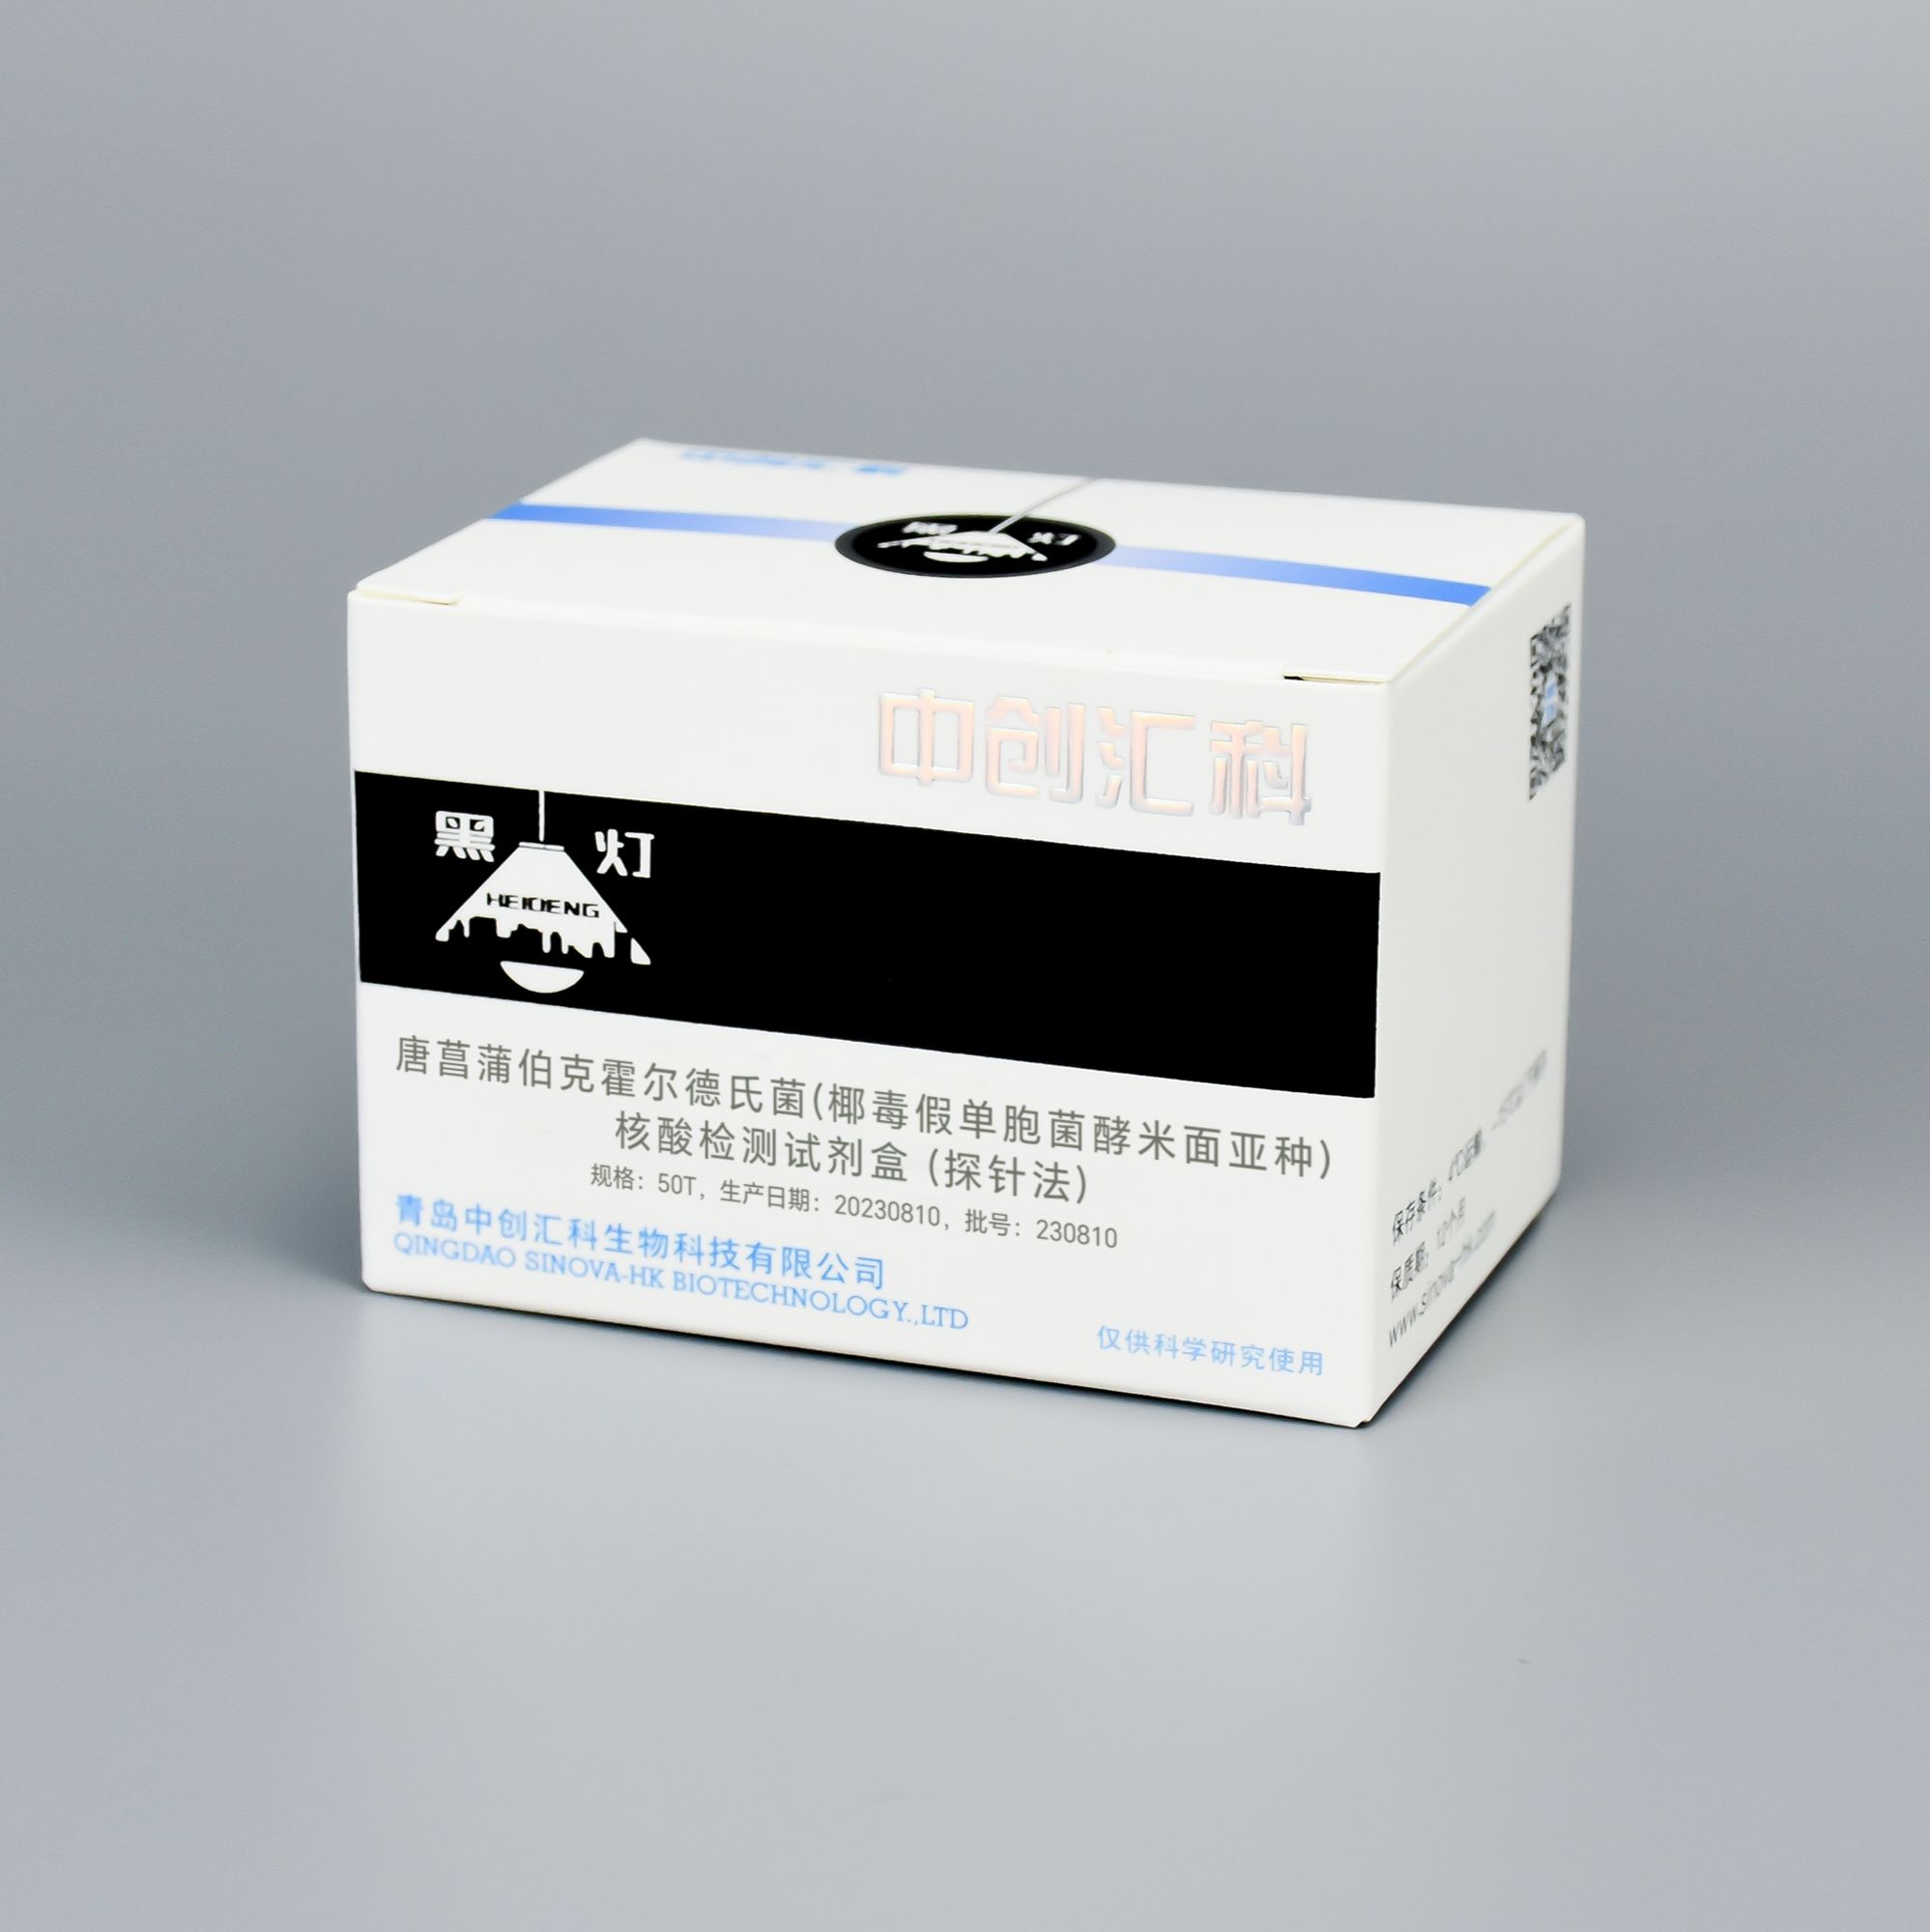 唐菖蒲伯克霍尔德氏菌(椰毒假单胞菌酵米面亚种)核酸检测试剂盒 (探针法)